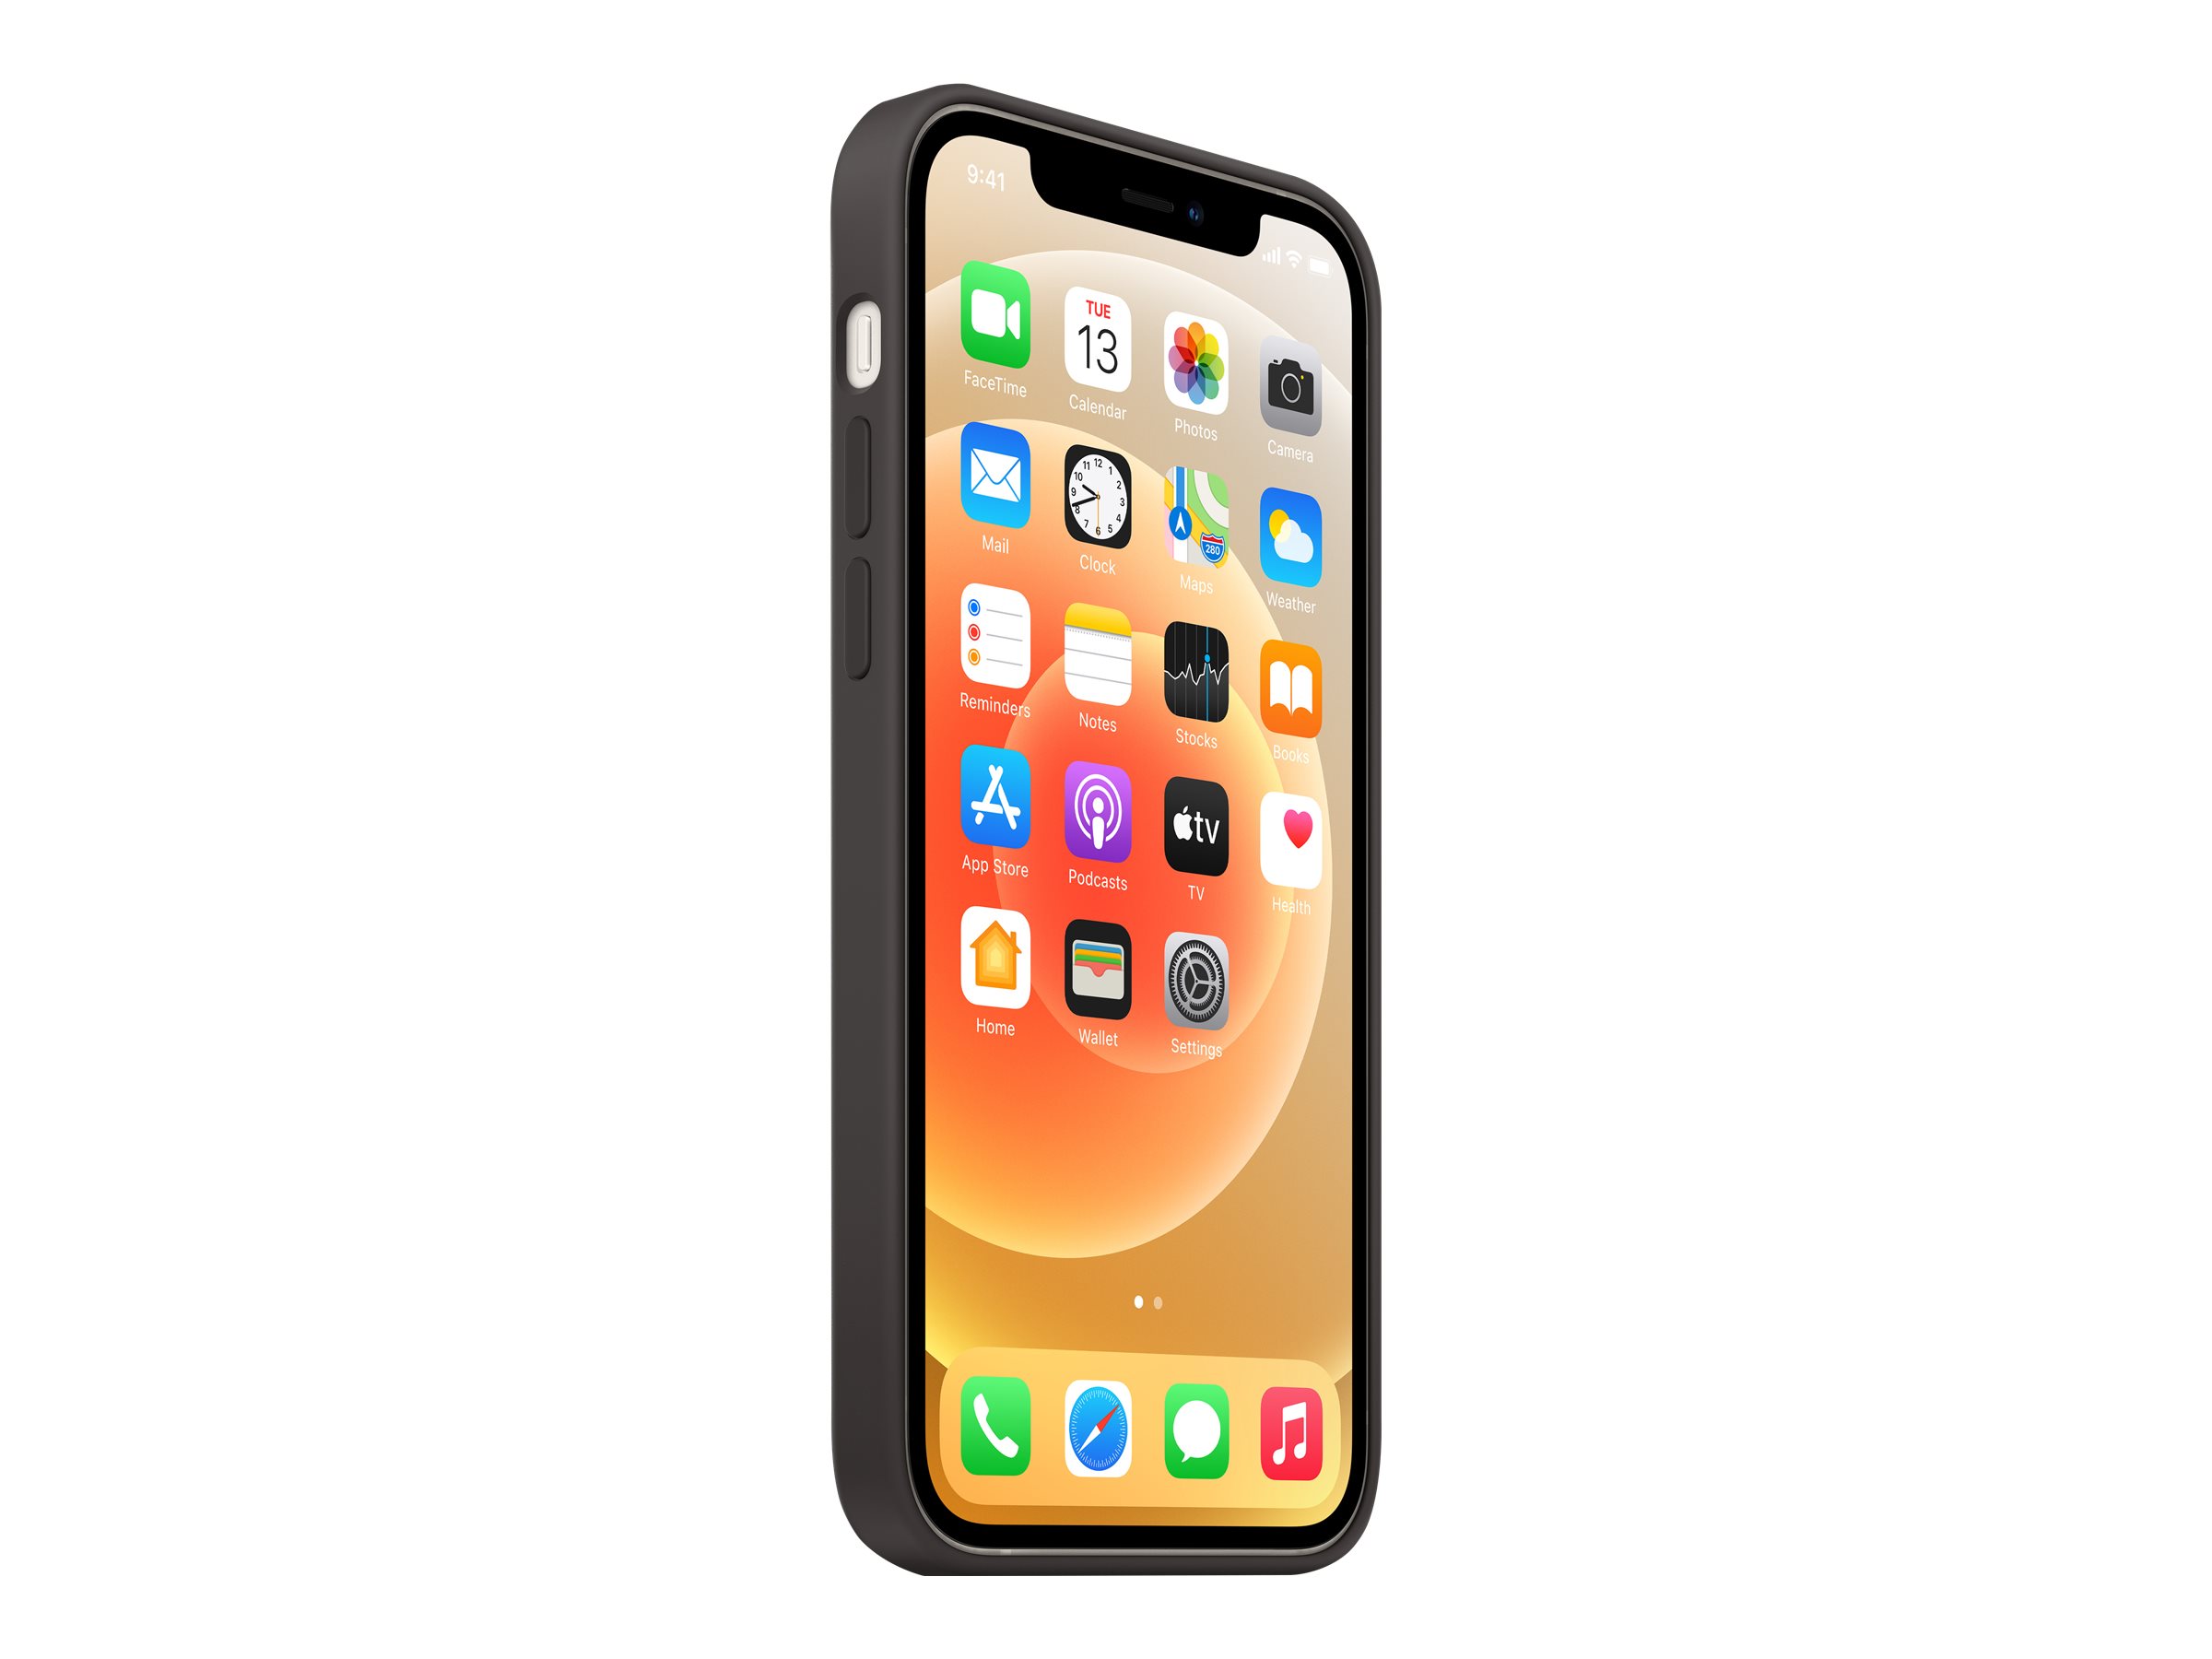 Apple - Coque de protection pour téléphone portable - avec MagSafe - silicone - noir - pour iPhone 12, 12 Pro - MHL73ZM/A - Coques et étuis pour téléphone portable